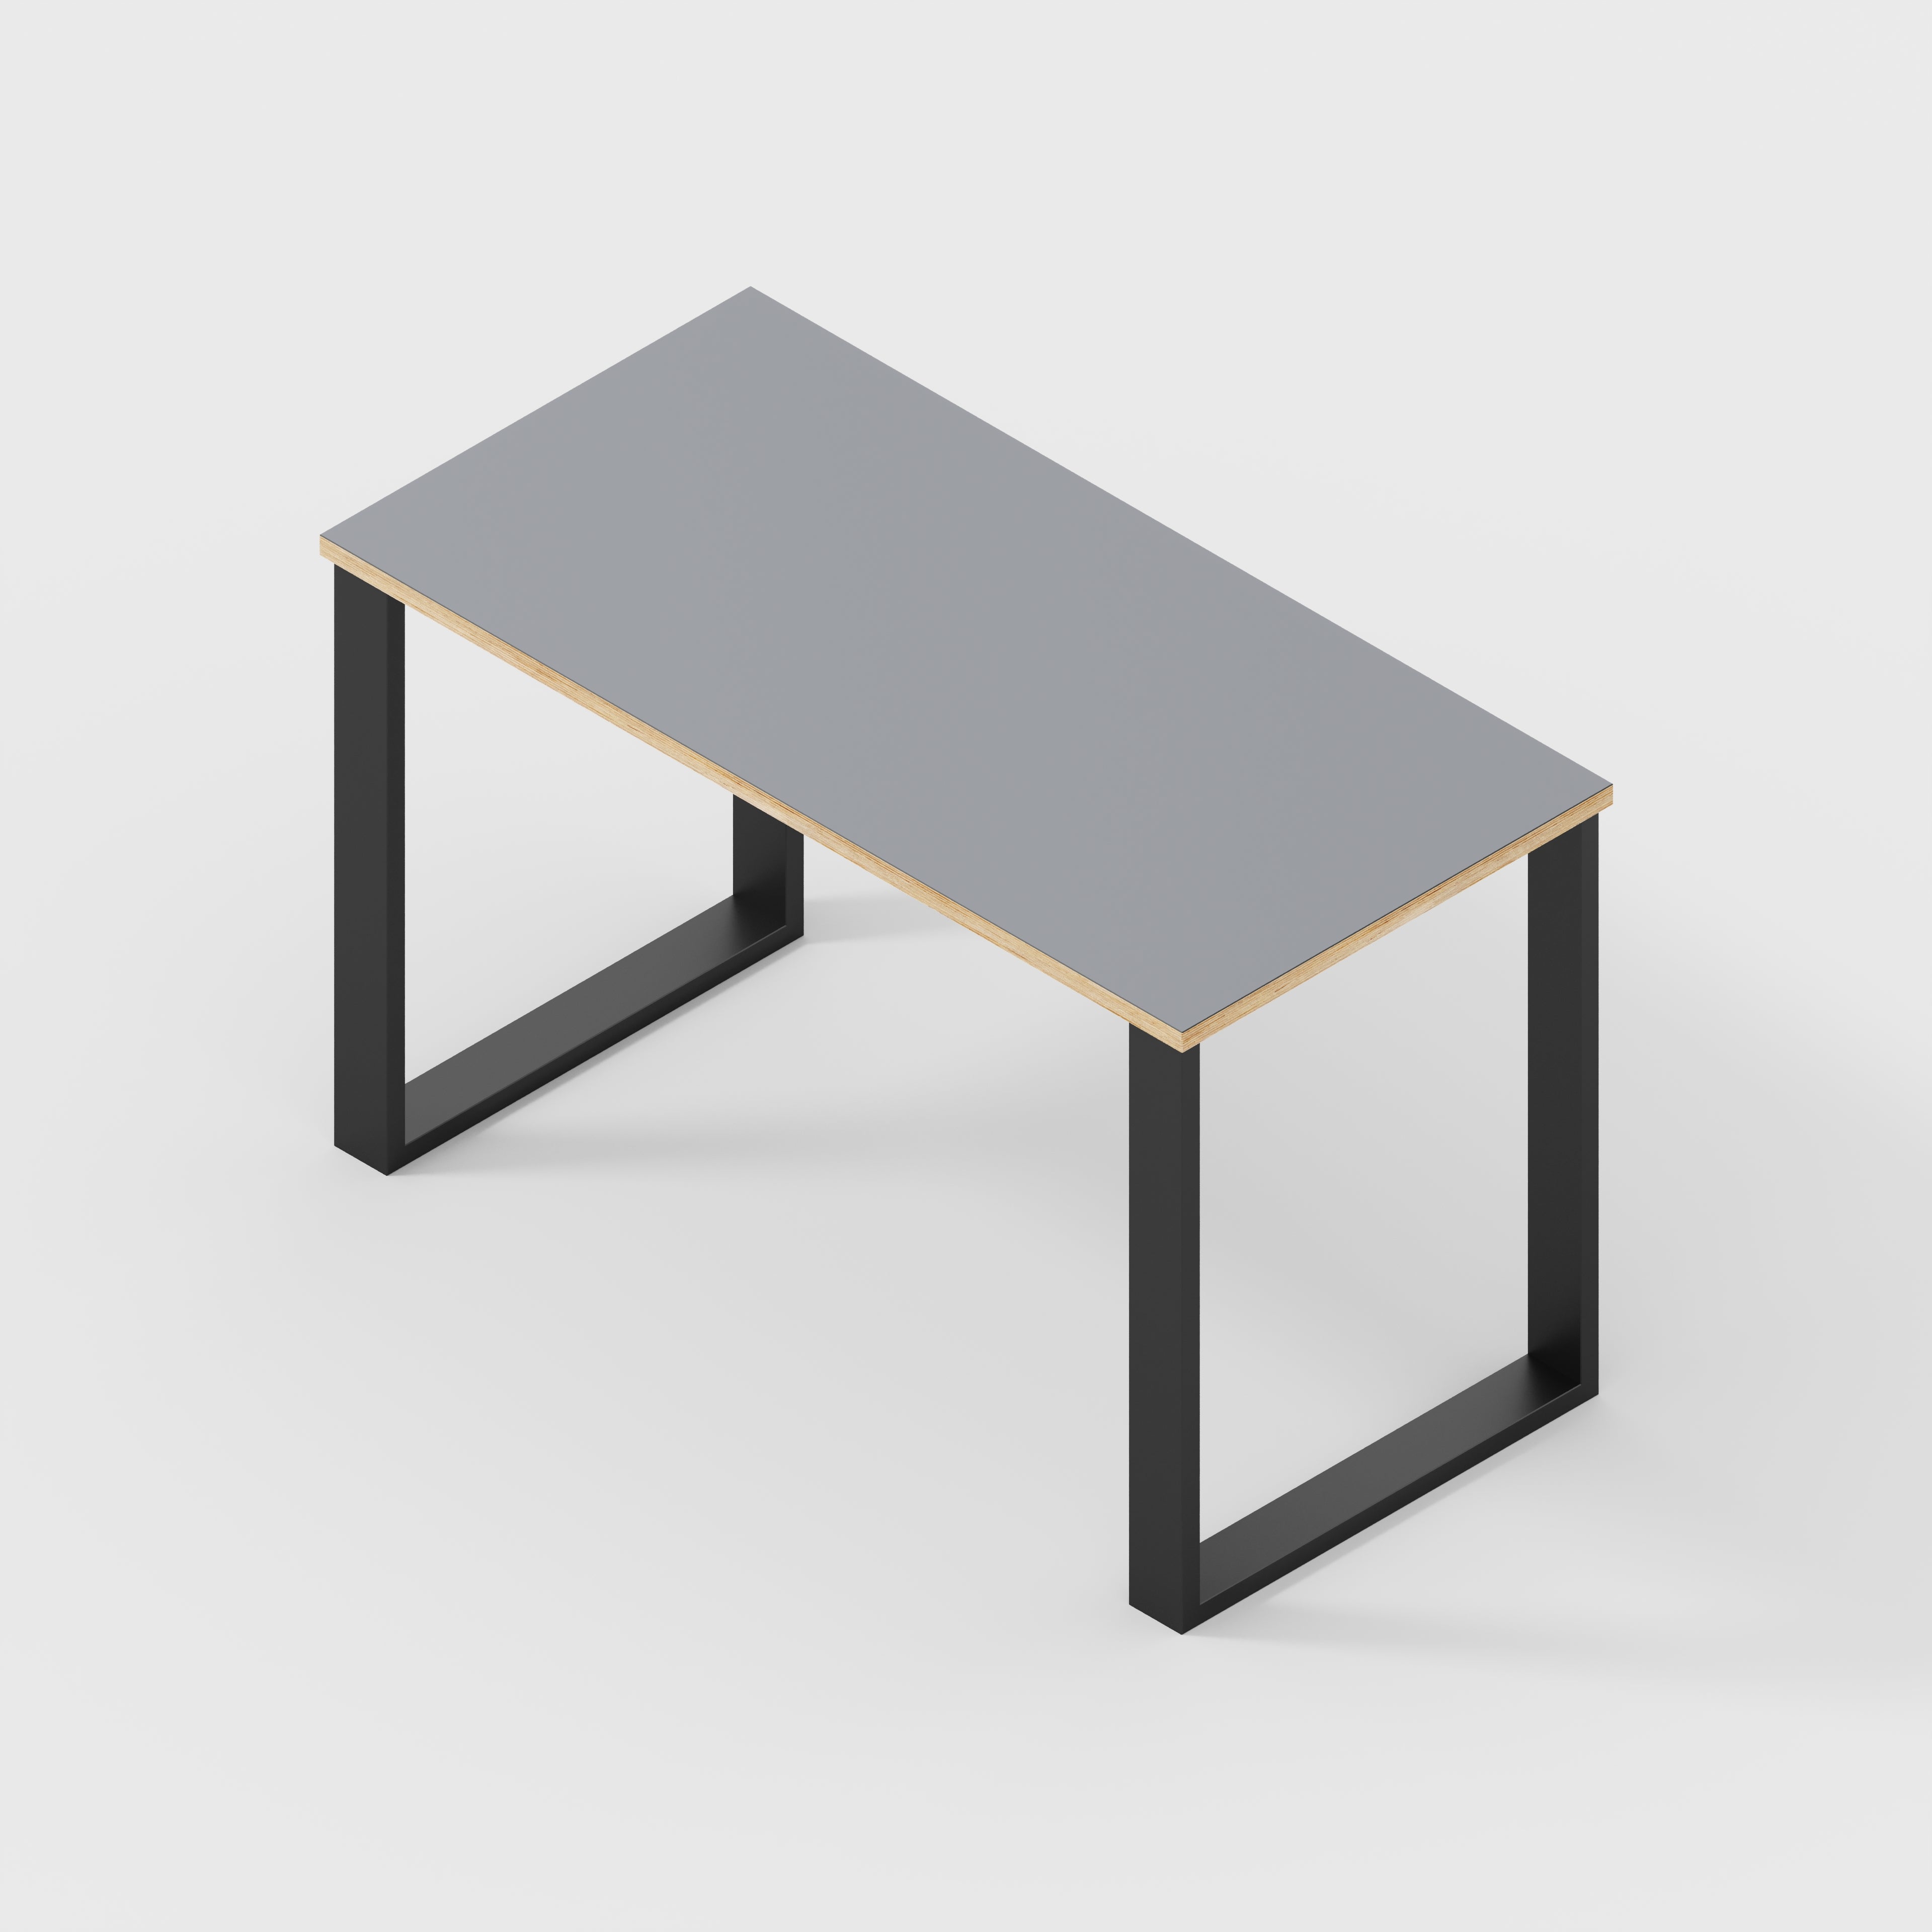 Desk with Black Industrial Legs - Formica Tornado Grey - 1200(w) x 600(d) x 735(h)